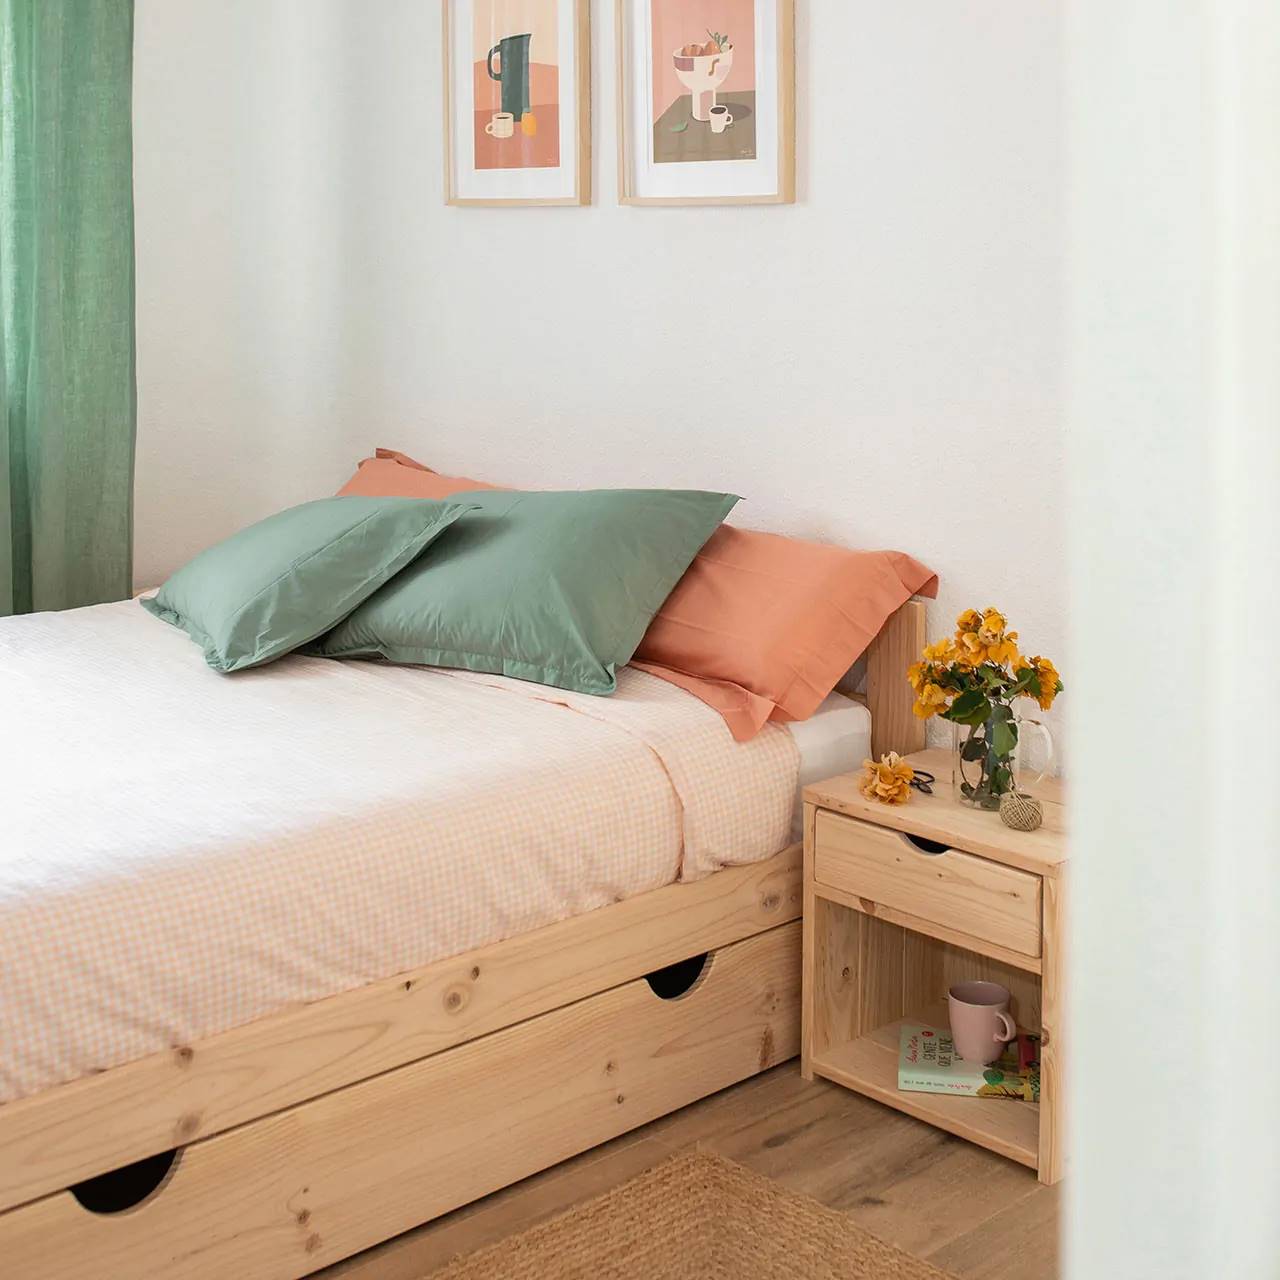 Literas y camas de Muebles LUFE: muebles más bonitos del IKEA vasco